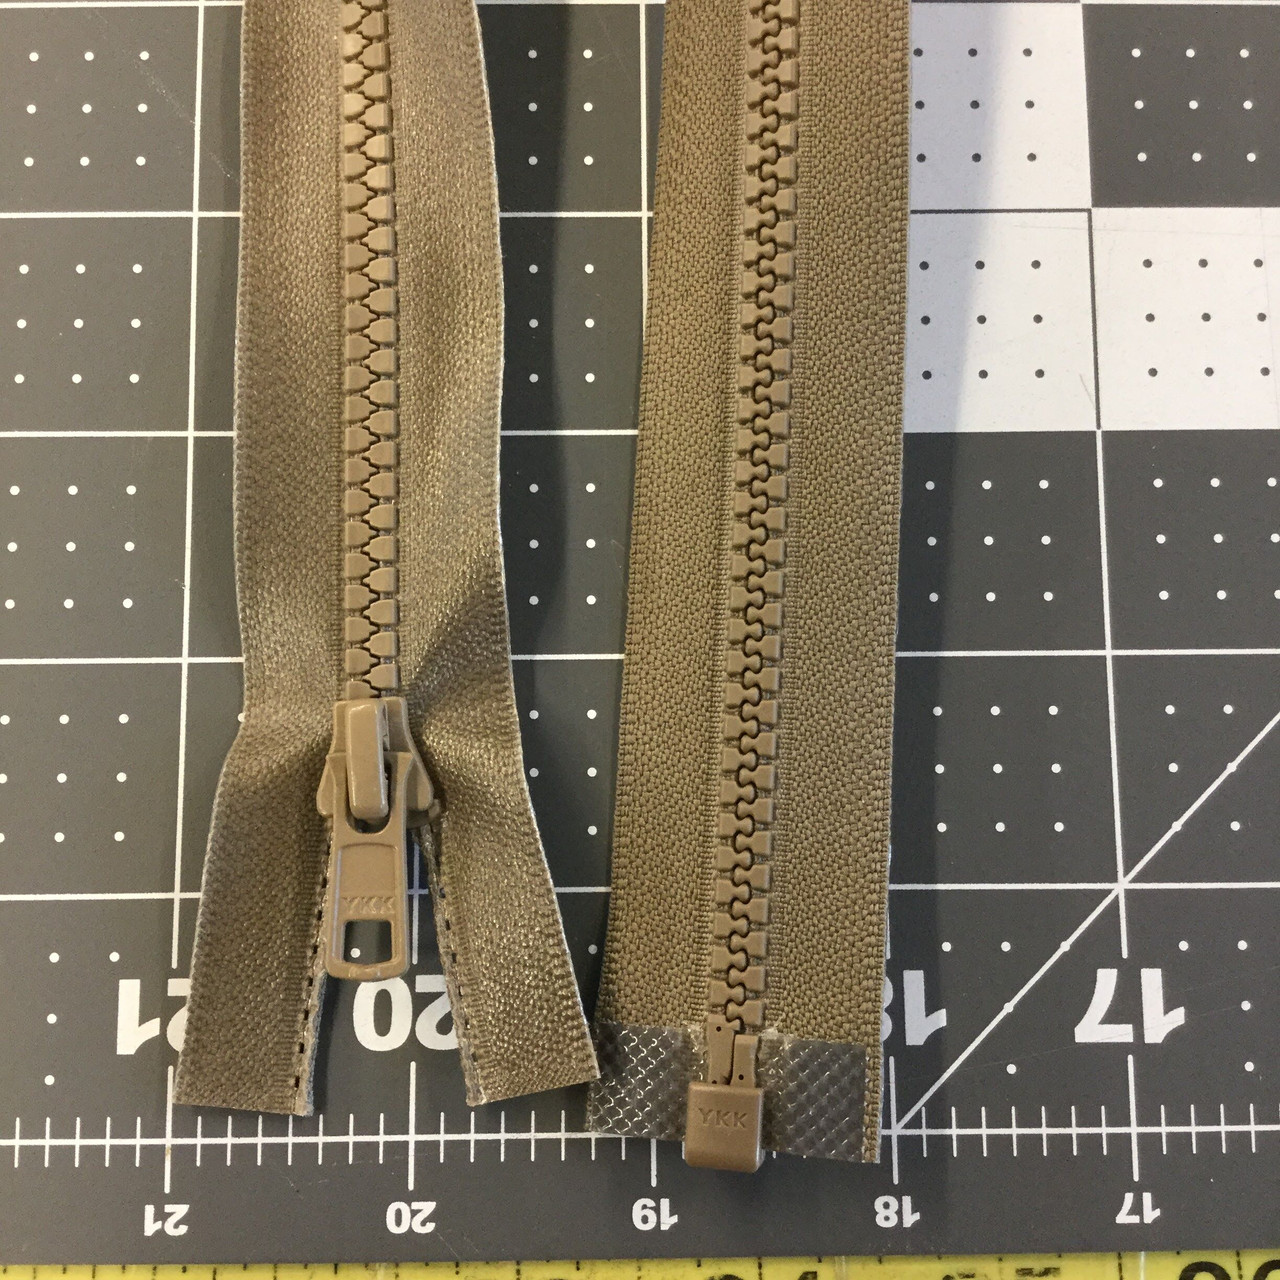 Brass Separating Zipper 18in Black – Sew Hot